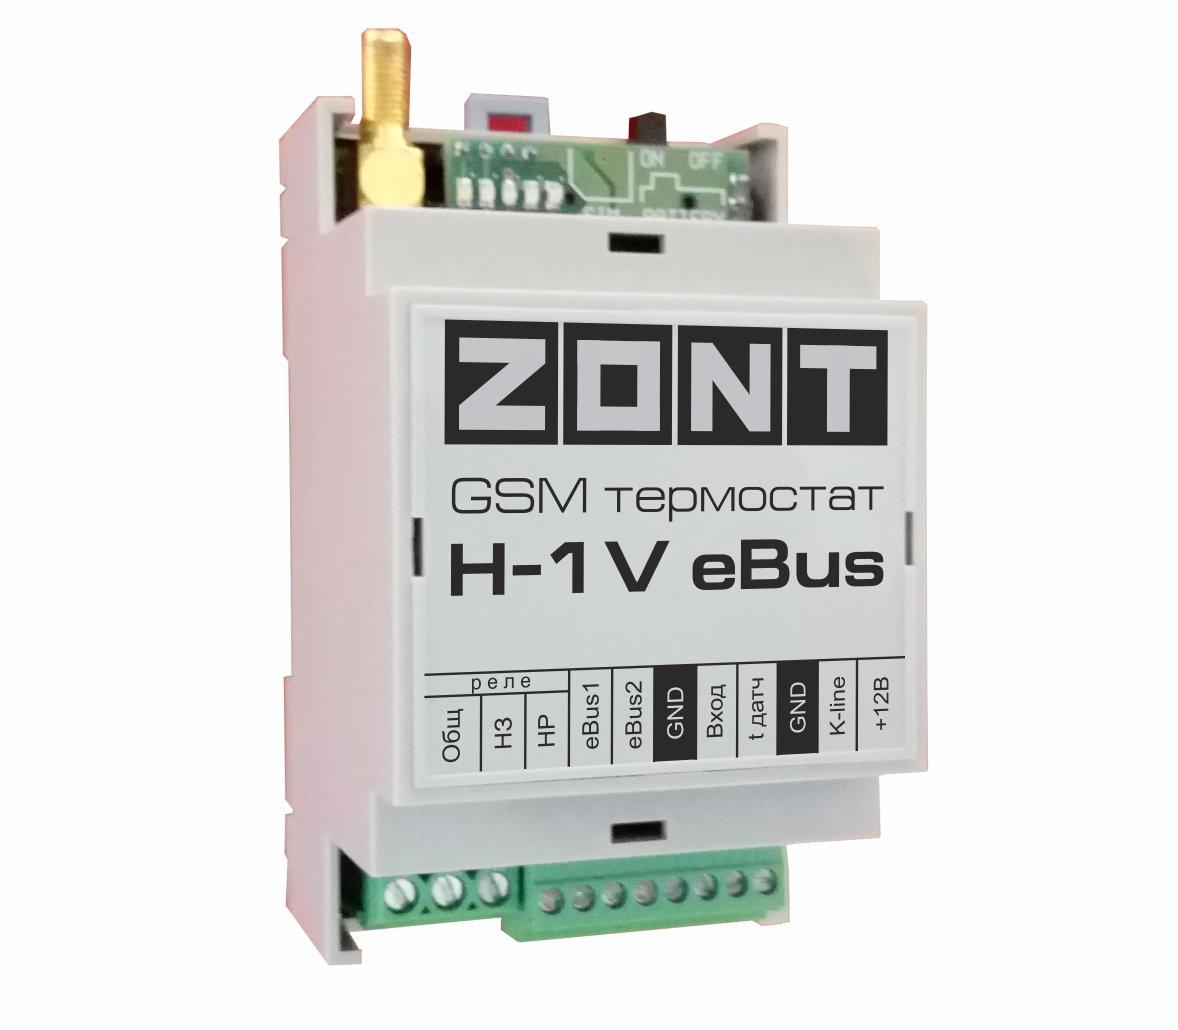 Теплоинформатор ZONT-H1V eBUS GSM. Подходит к любому котлу! ЭВАН